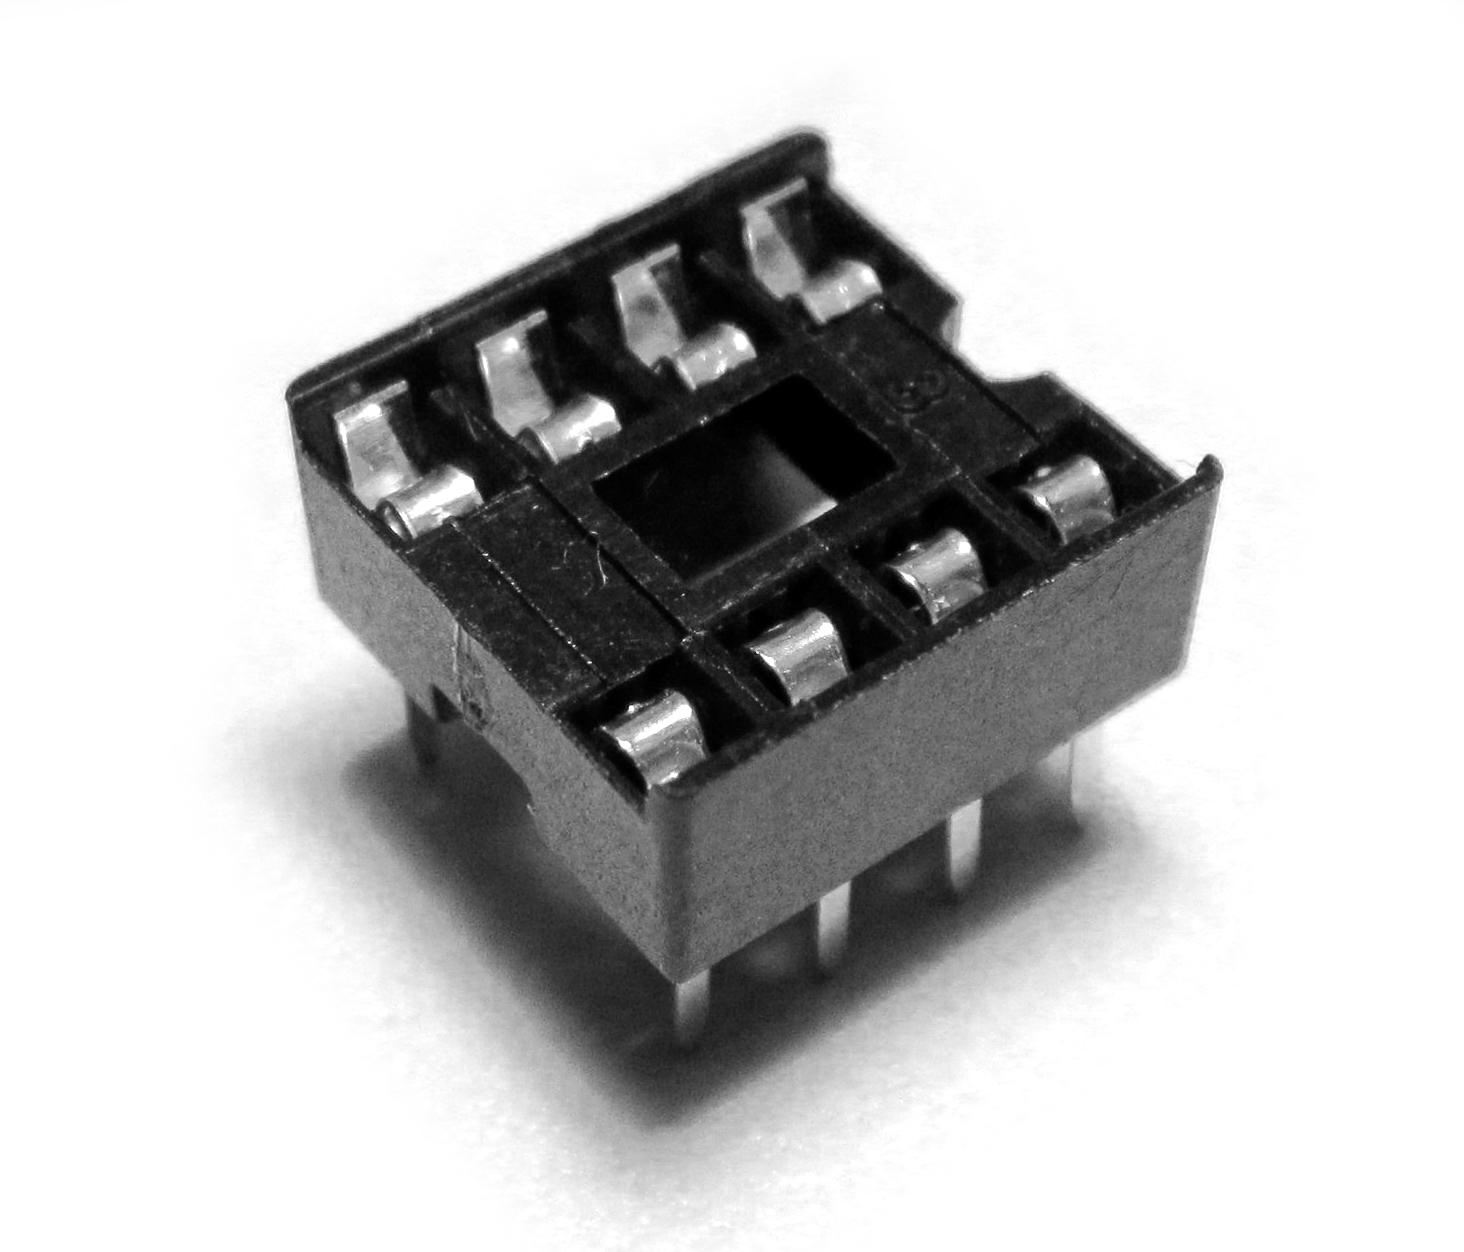 8 pin IC socket